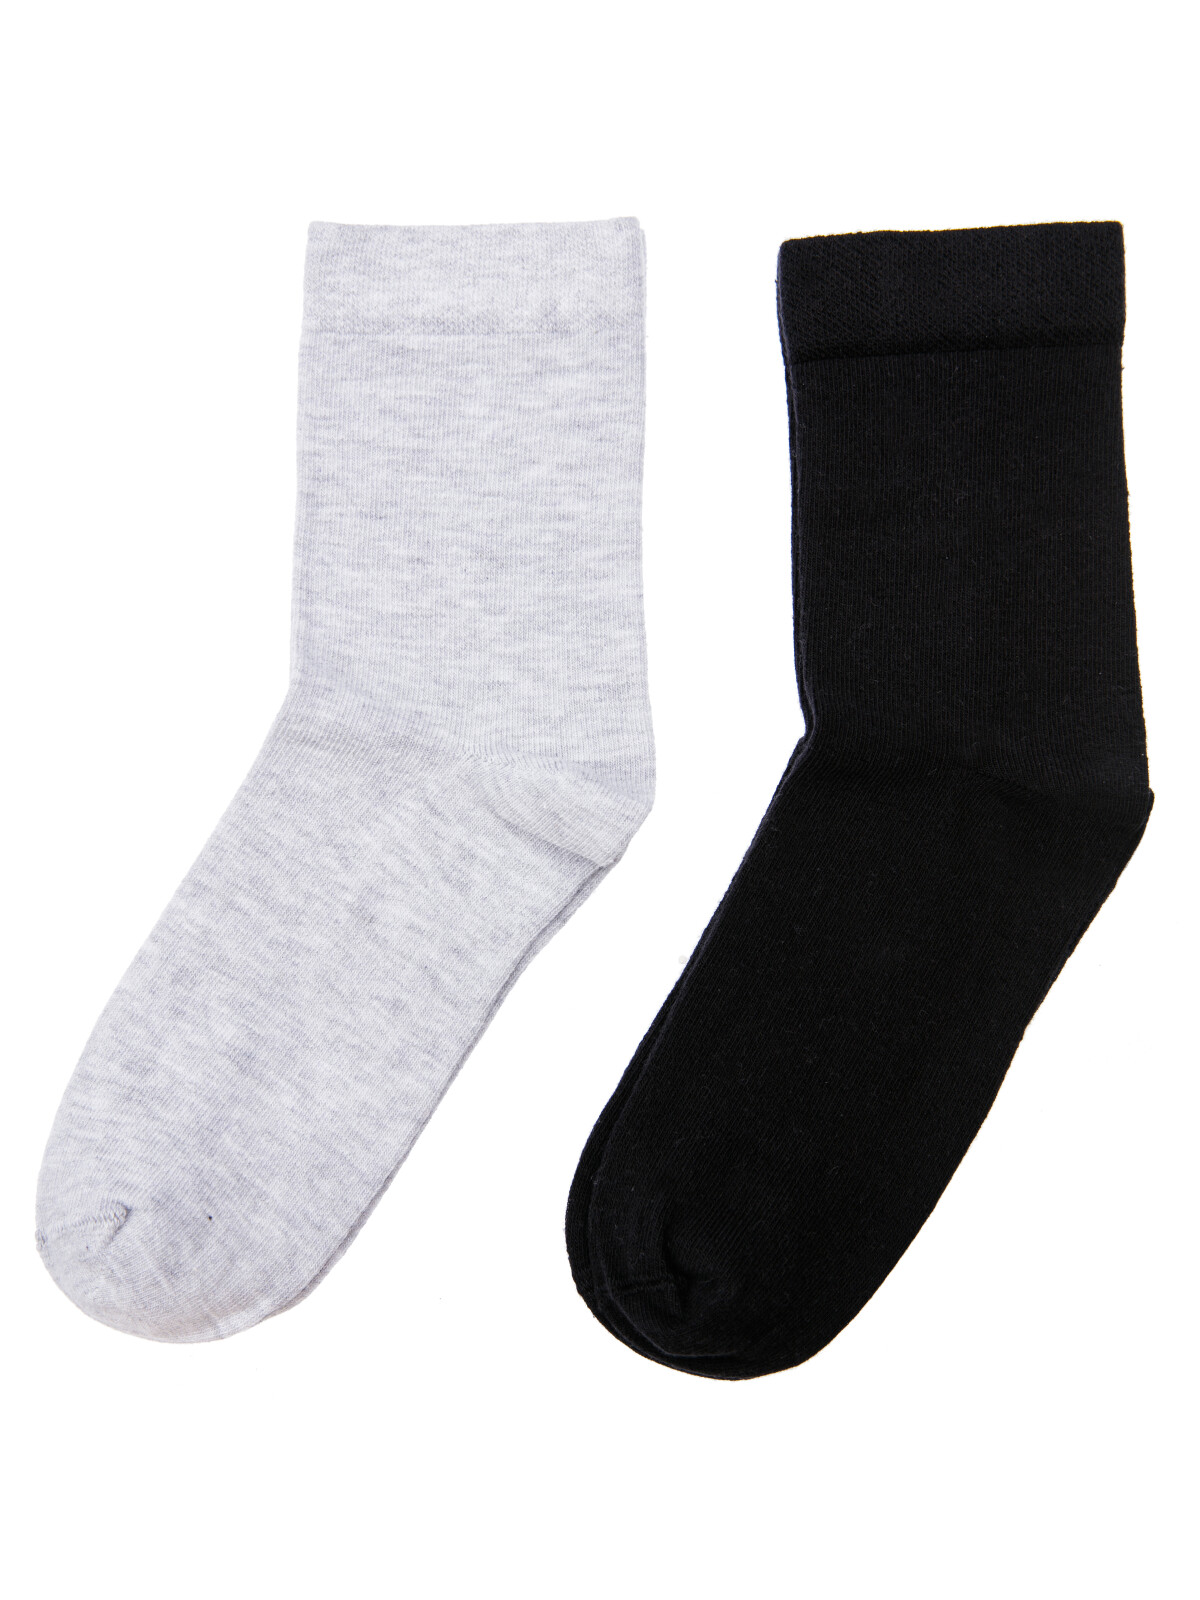 Носки трикотажные для мальчиков PlayToday, 2 пары в комплекте, серый меланж,черный, 31-33